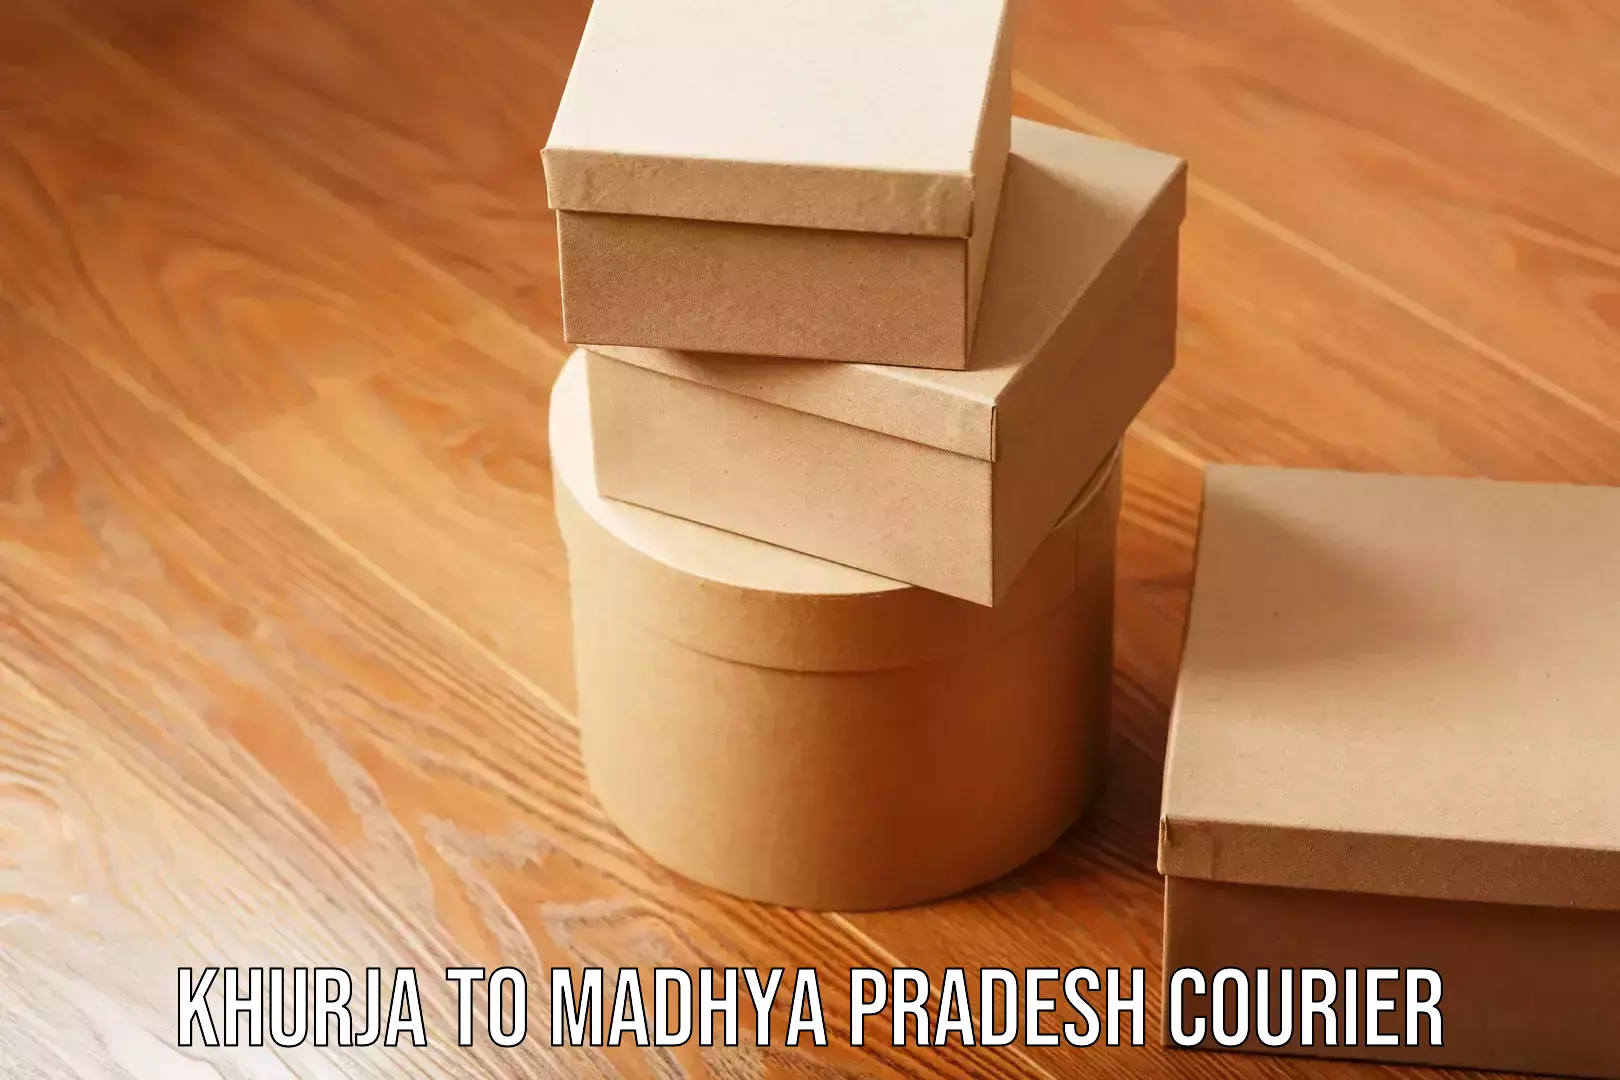 Premium moving services Khurja to Madhya Pradesh